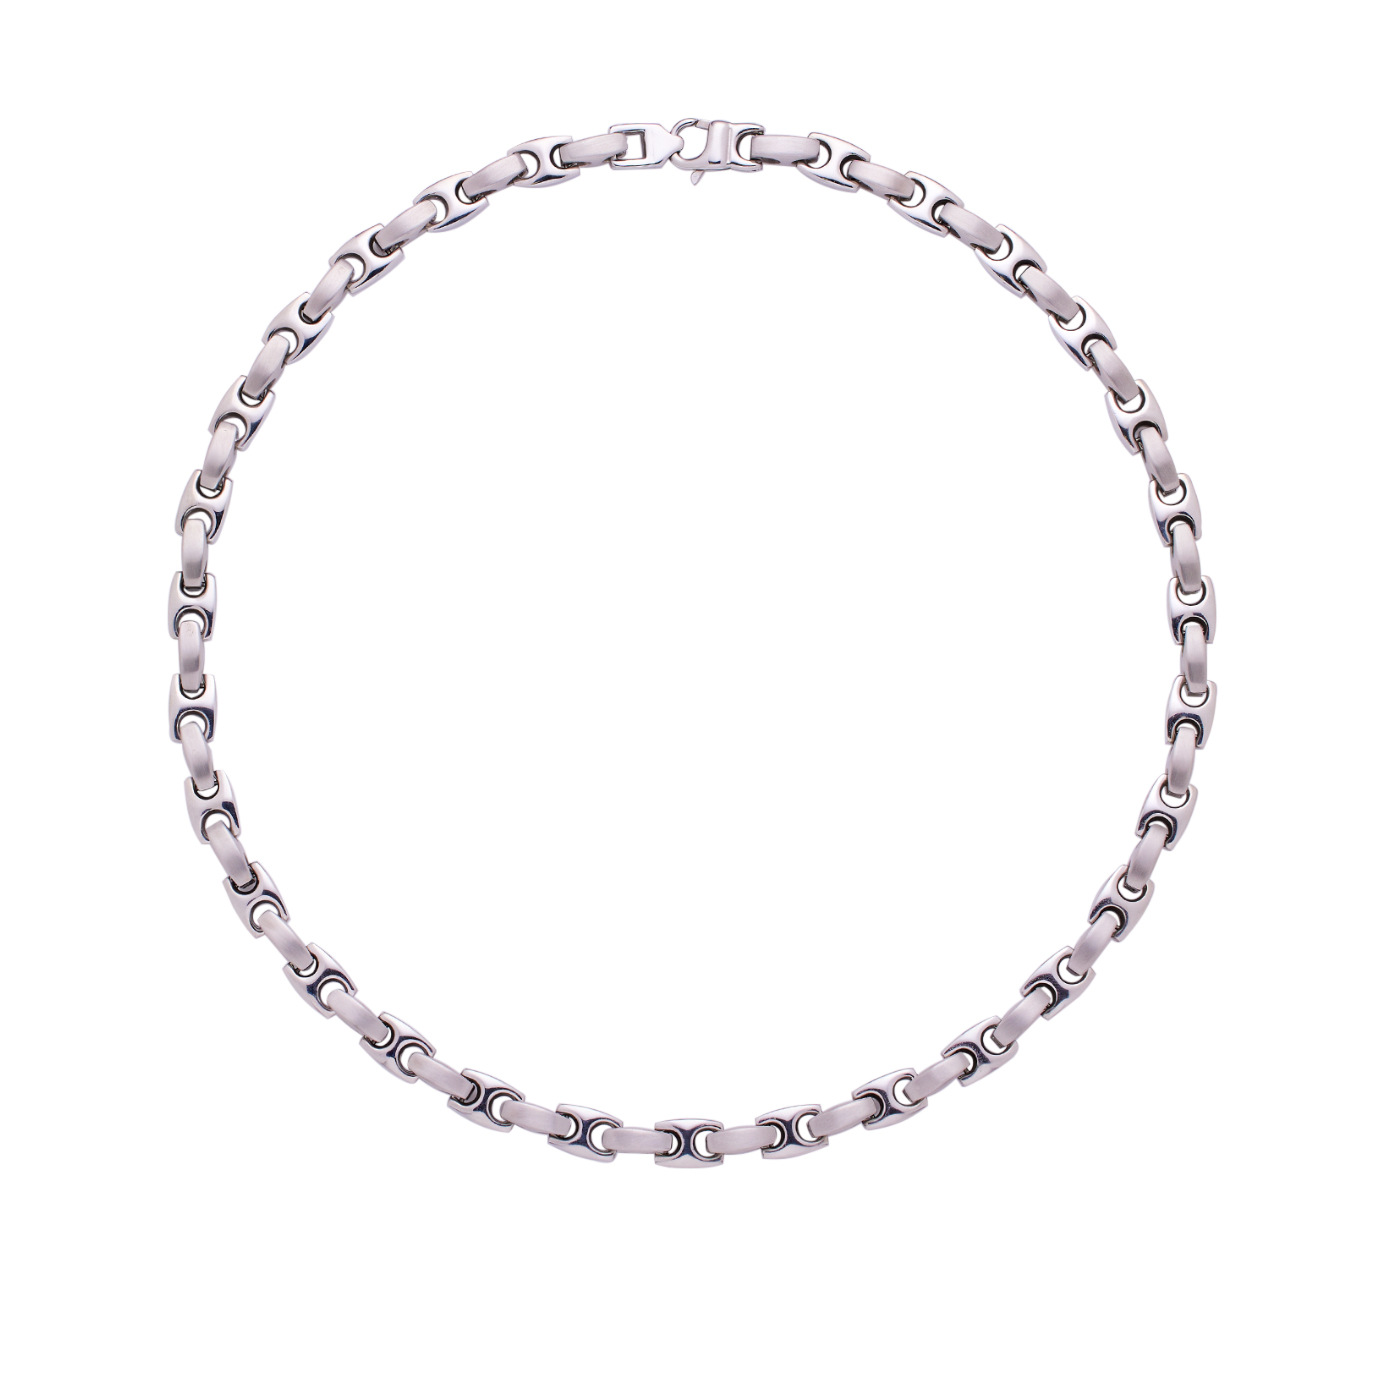 2:Necklace 60cm